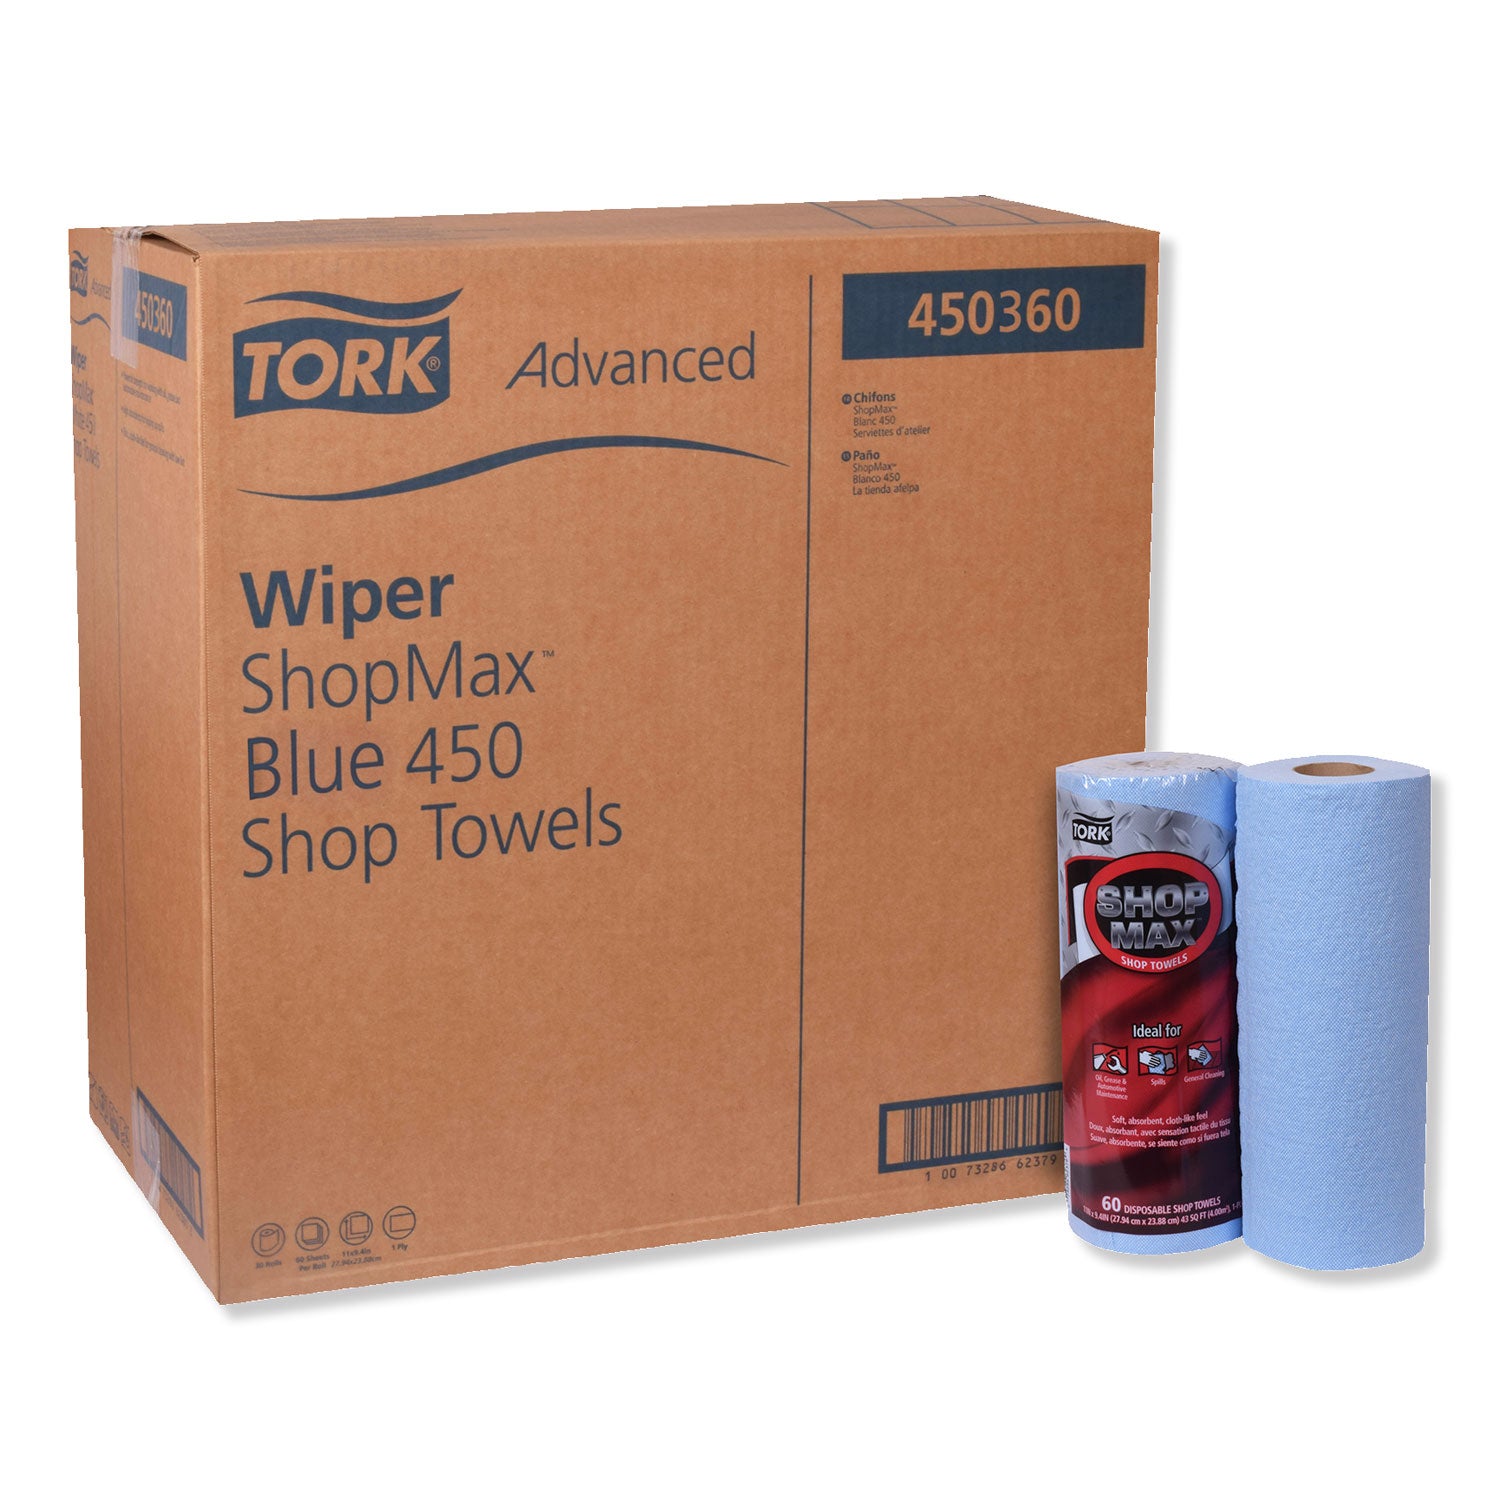 advanced-shopmax-wiper-450-11-x-94-blue-60-roll-30-rolls-carton_trk450360 - 1